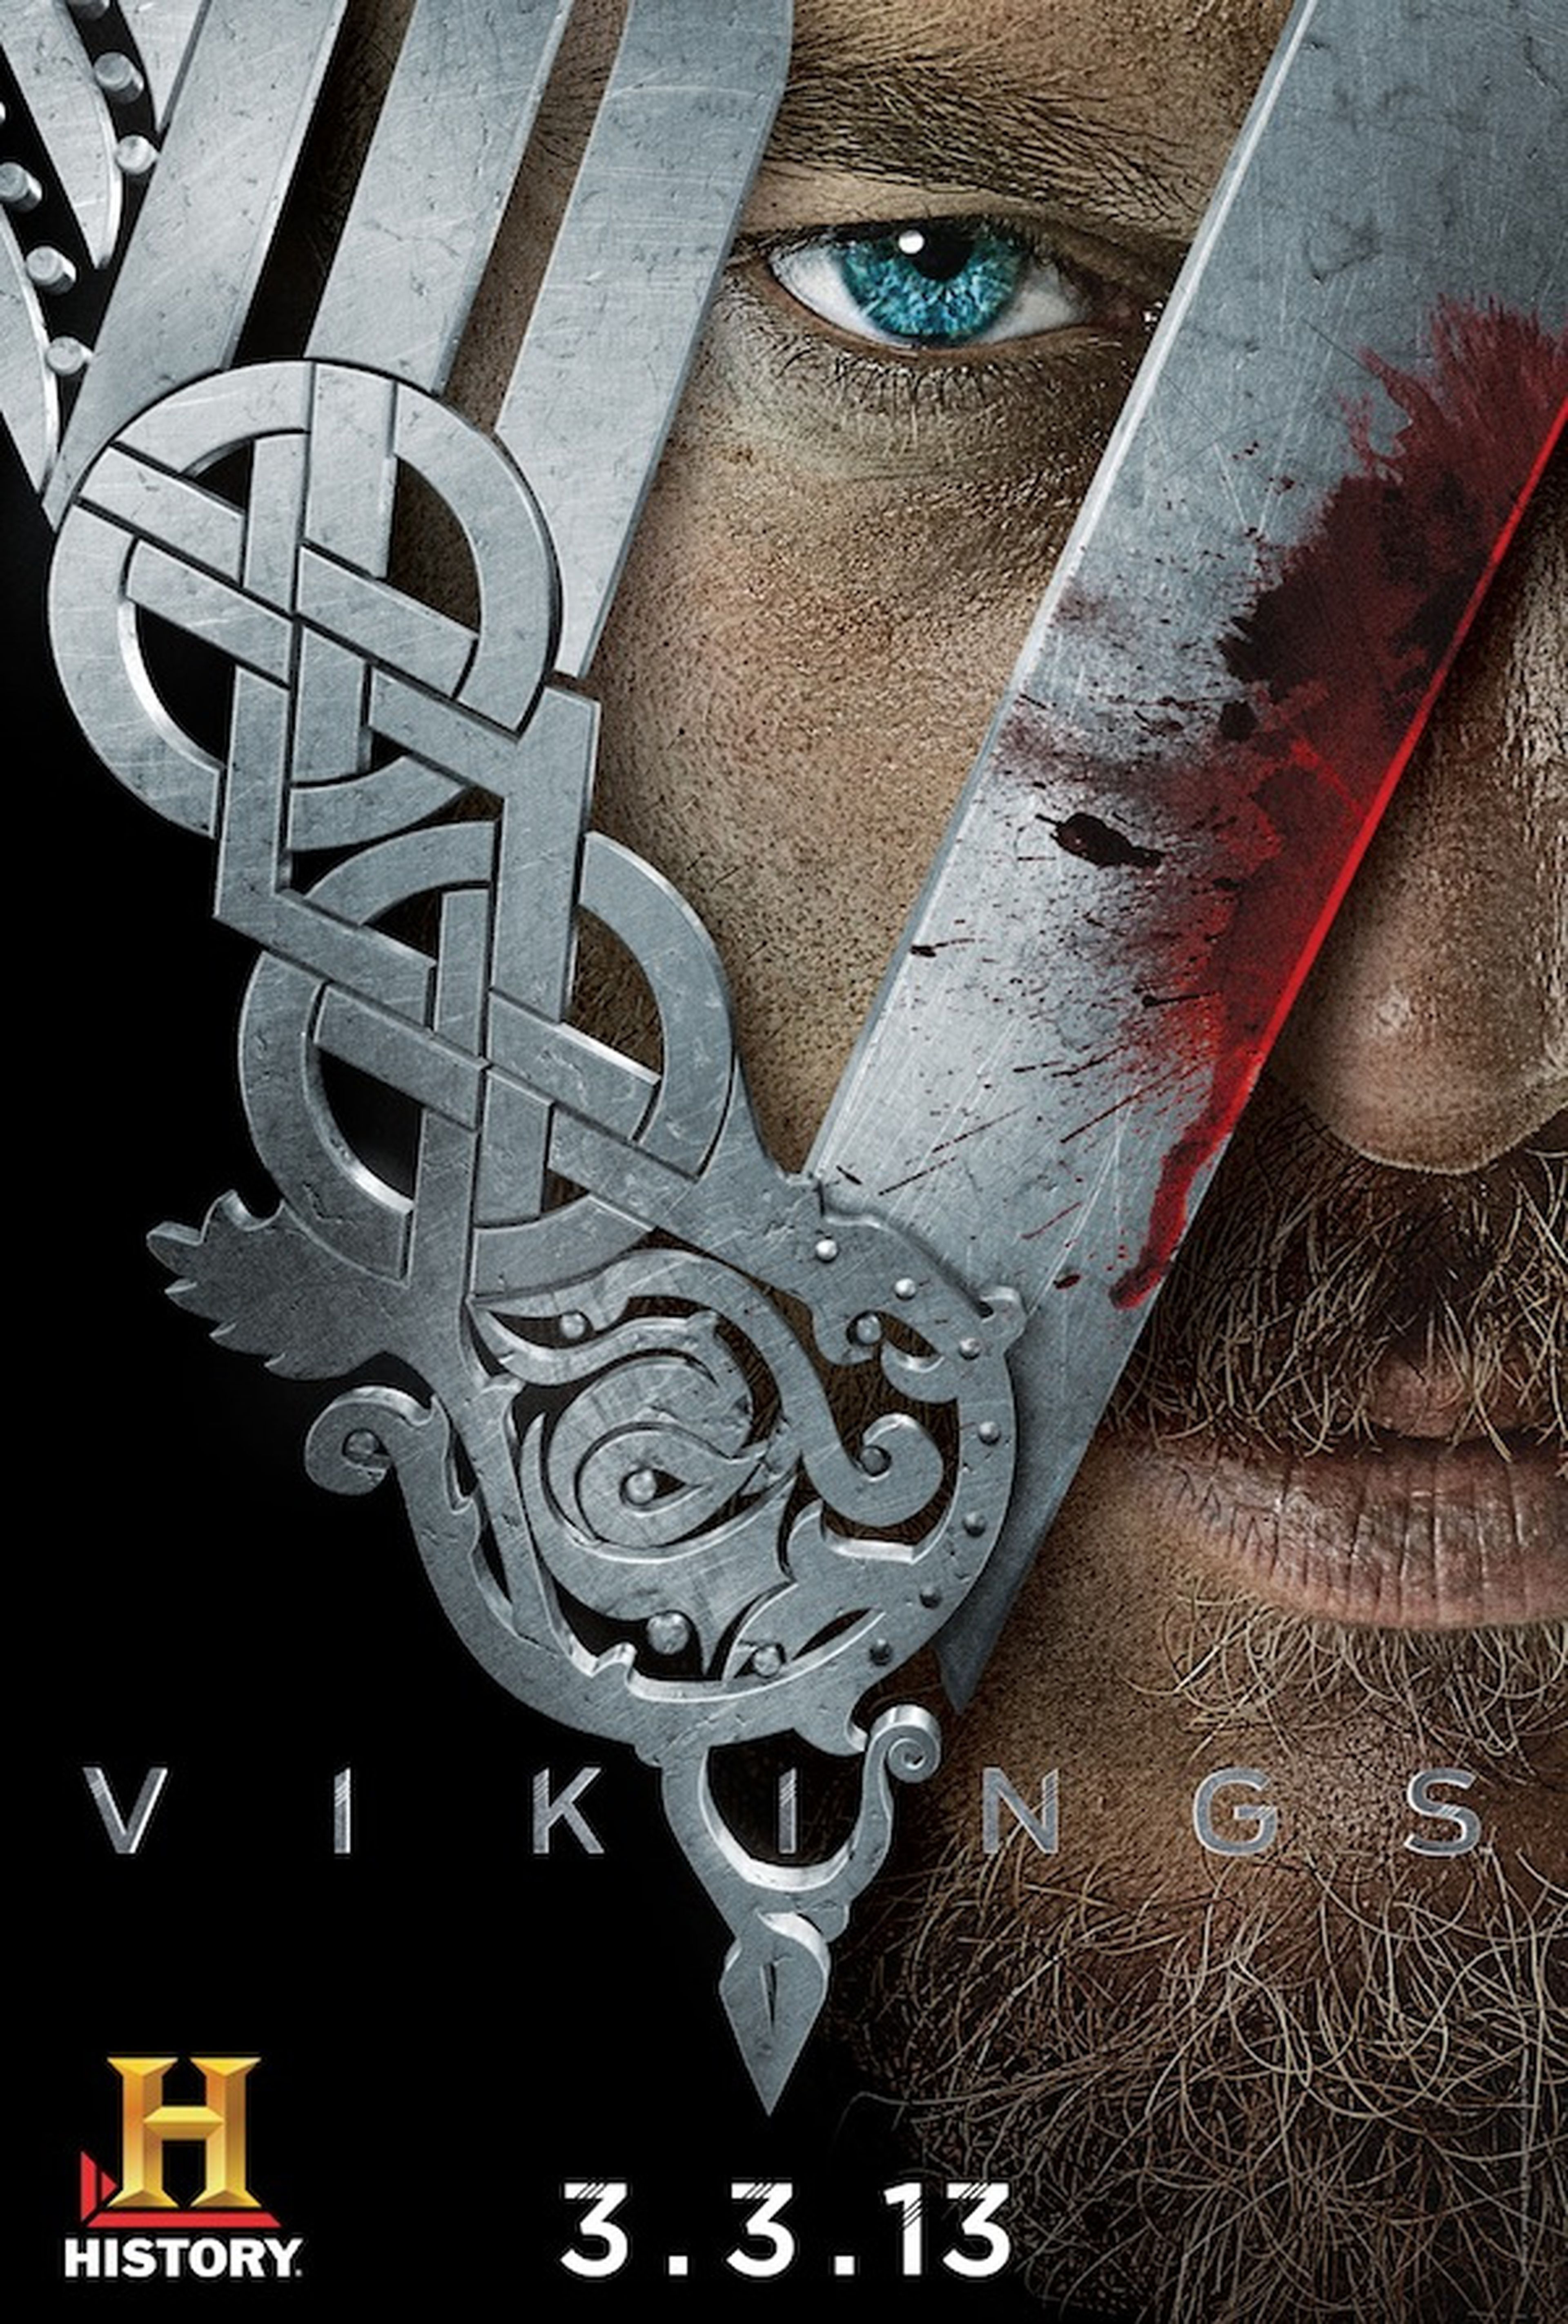 History Channel lanzará la serie de ficción Vikings